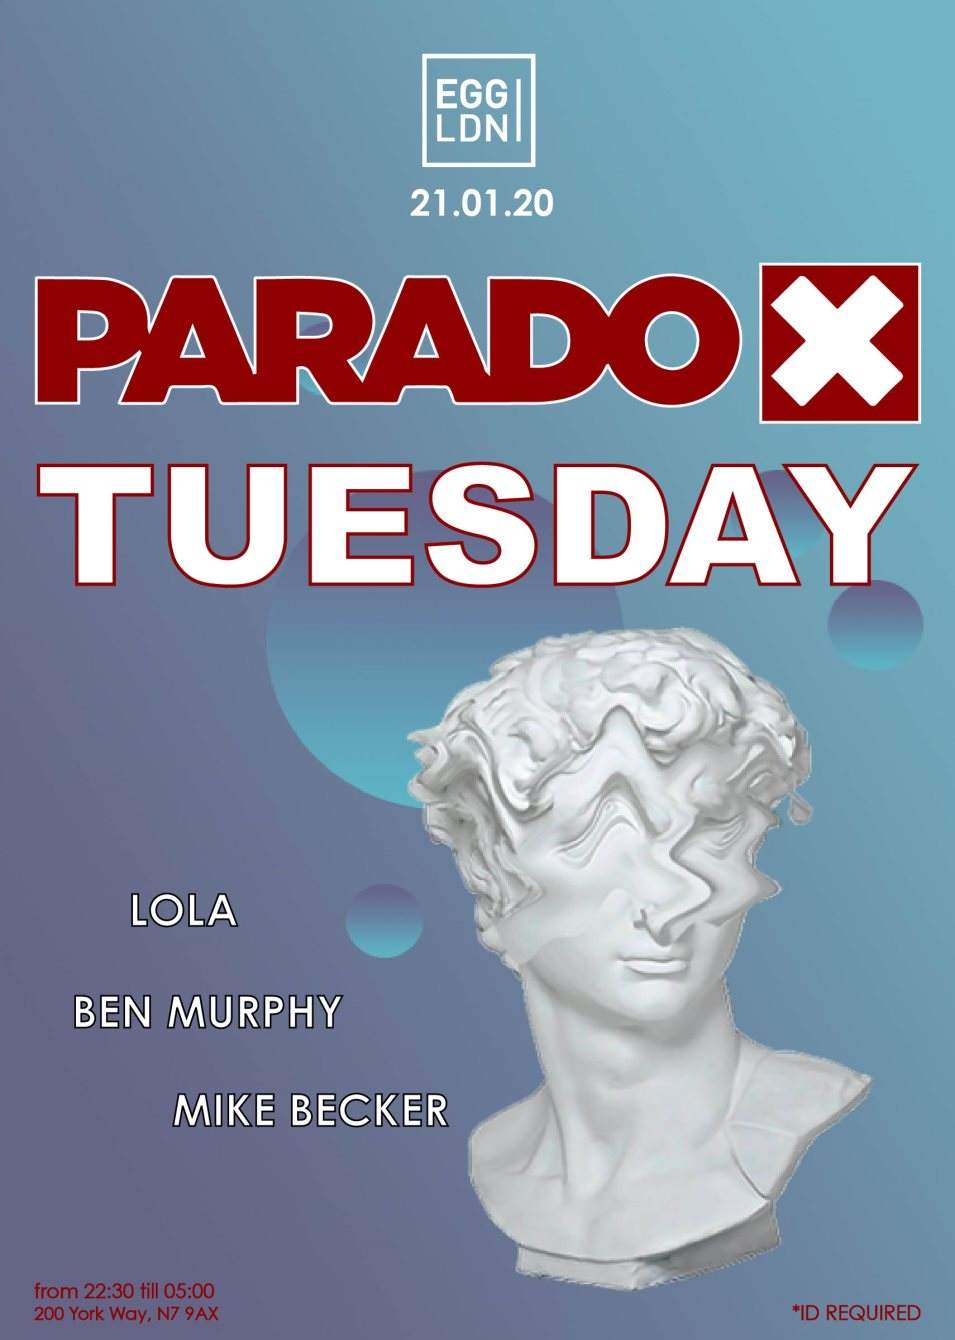 Paradox Tuesday at Egg London - フライヤー裏